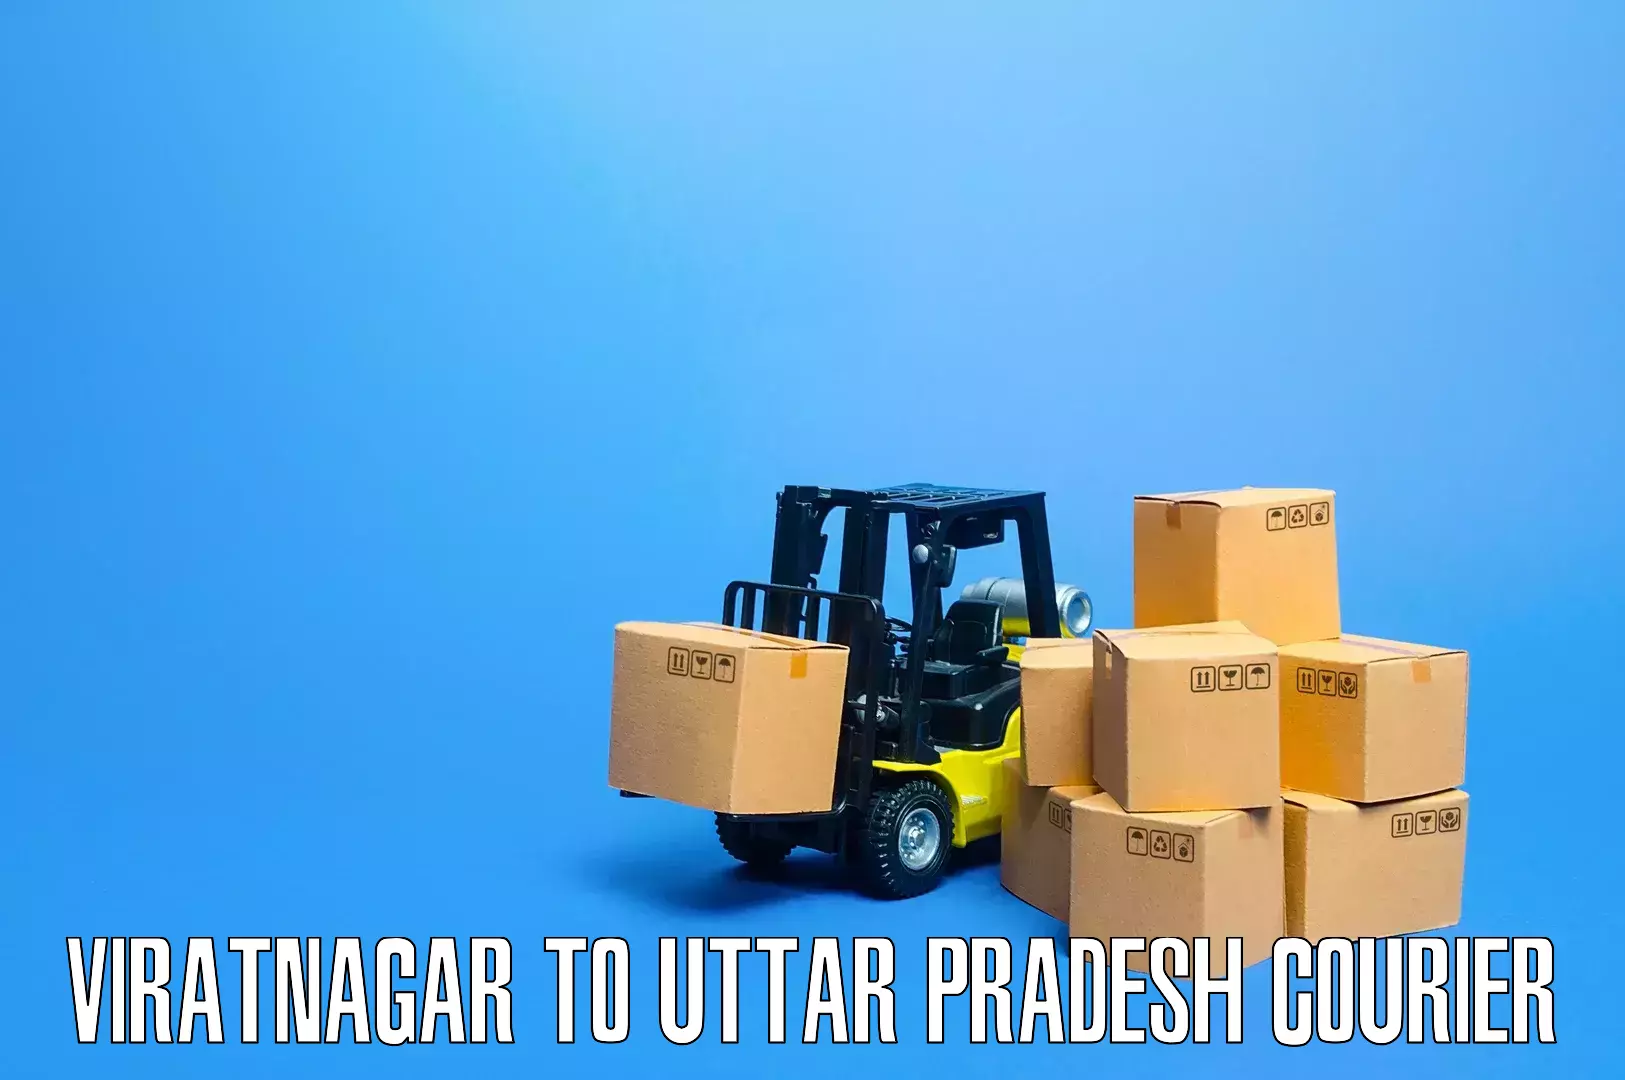 Furniture transport experts Viratnagar to Nanpara